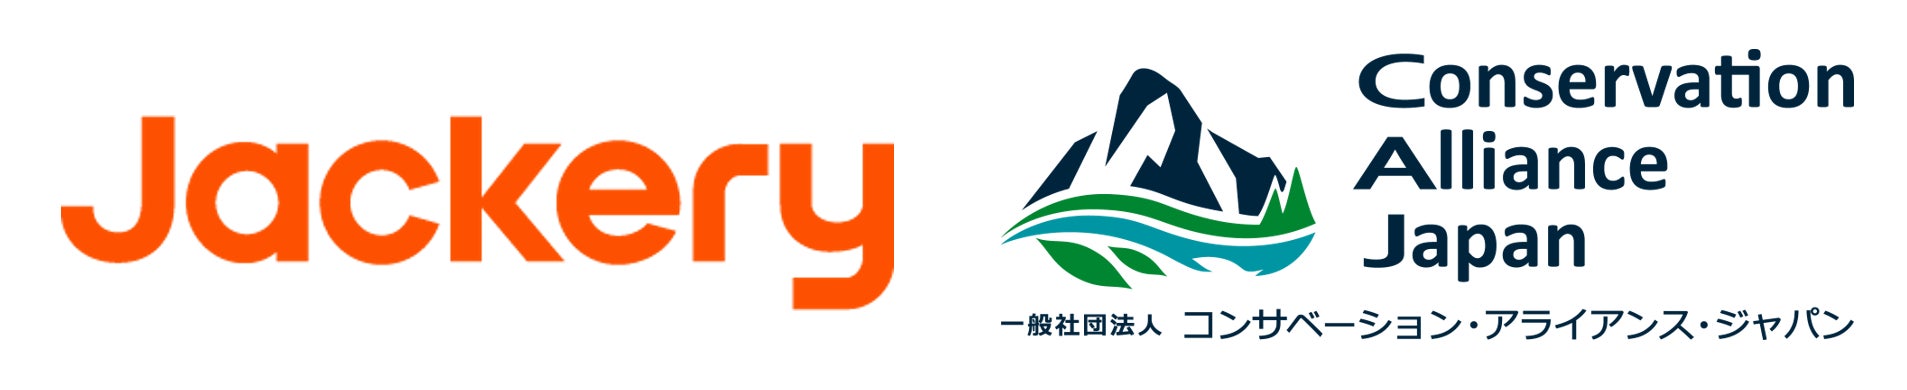 【Jackery Japan】日本の多様な自然環境・アウトドアフィールドを保護する団体「コンサベーション・アライアンス・ジャパン」にピナクルメンバーとして加盟のサブ画像1